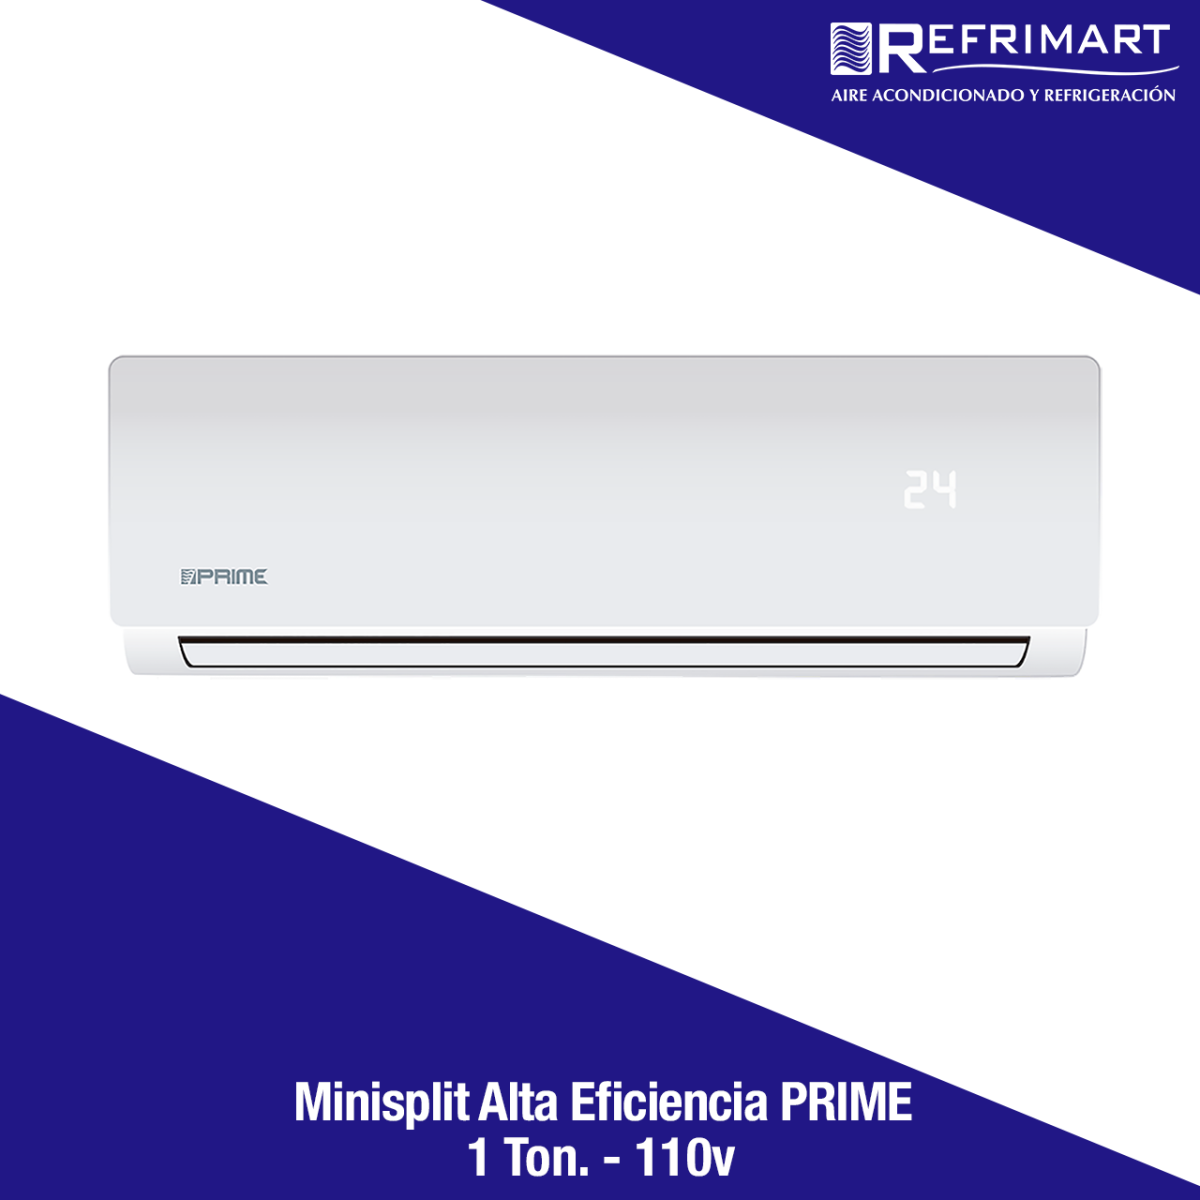 Minisplit Alta Eficiencia PRIME - 1 Ton. 110v